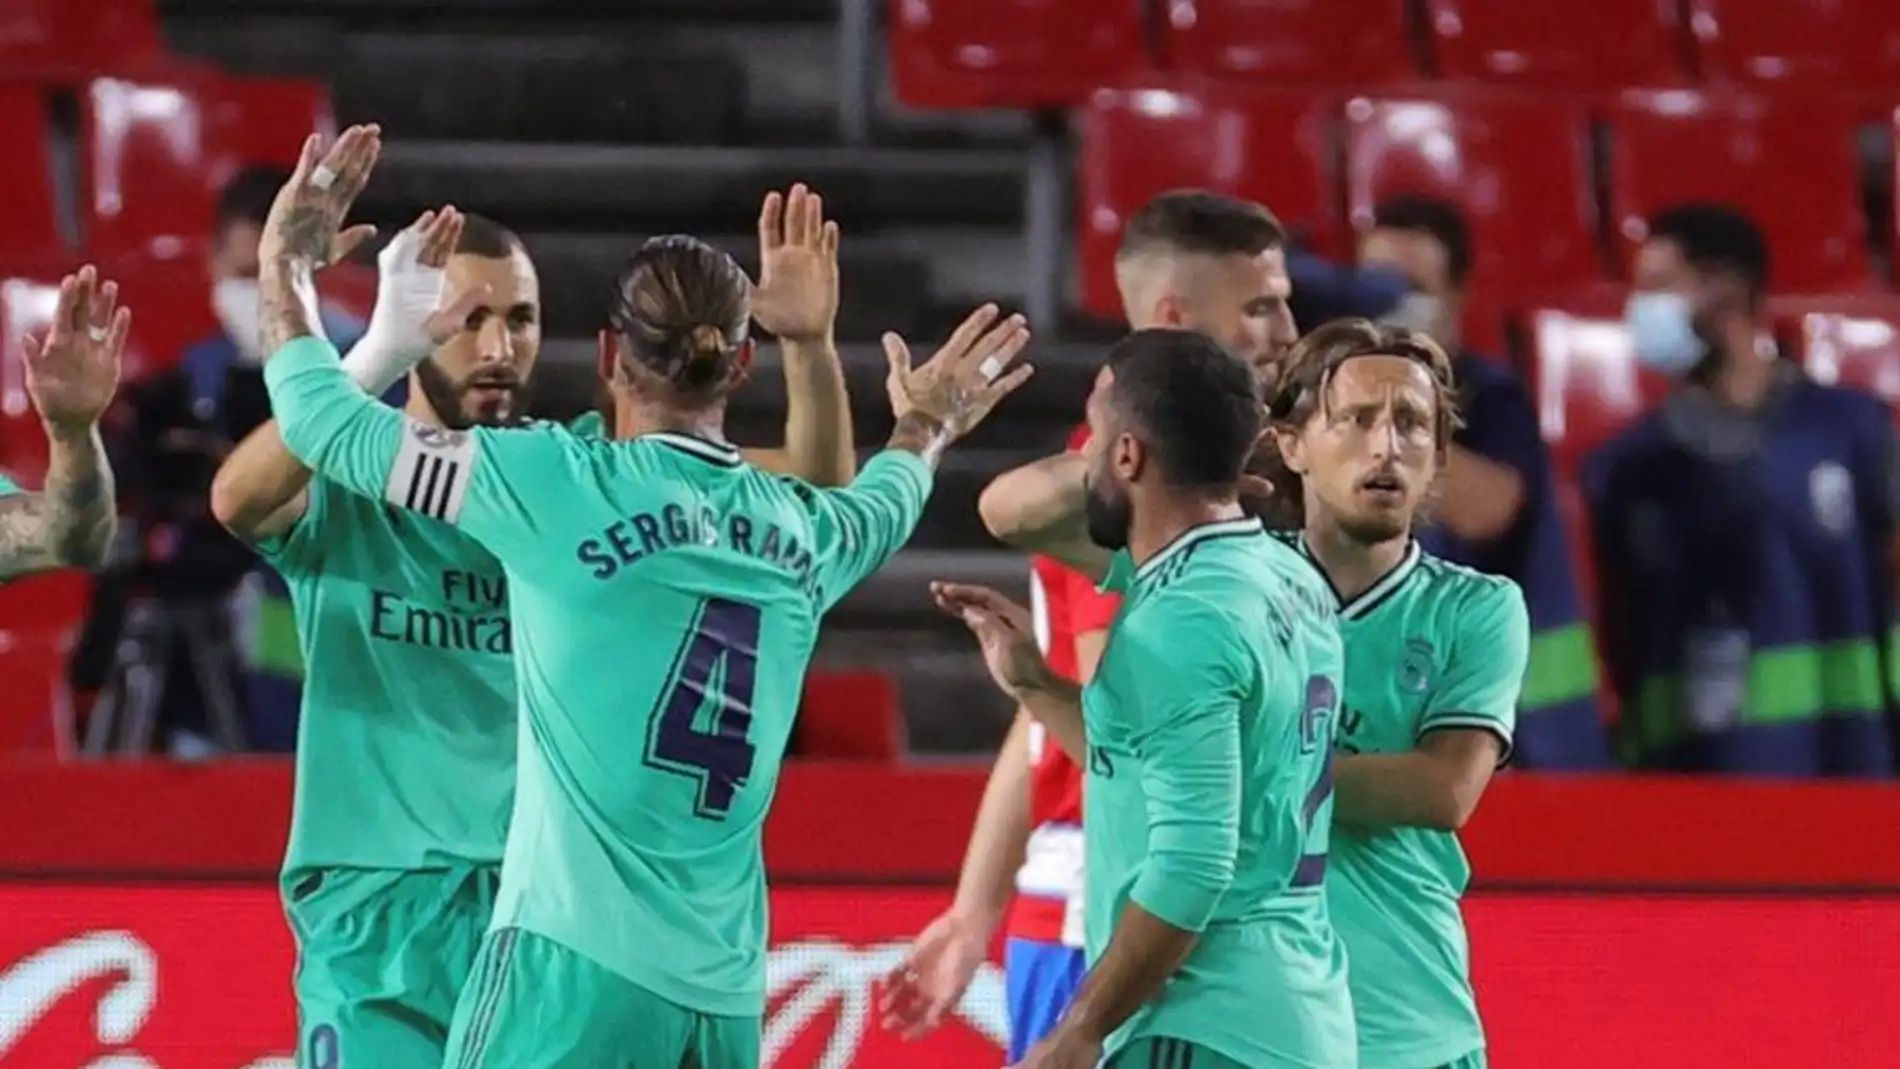 Los futbolistas del Real Madrid celebran un gol.